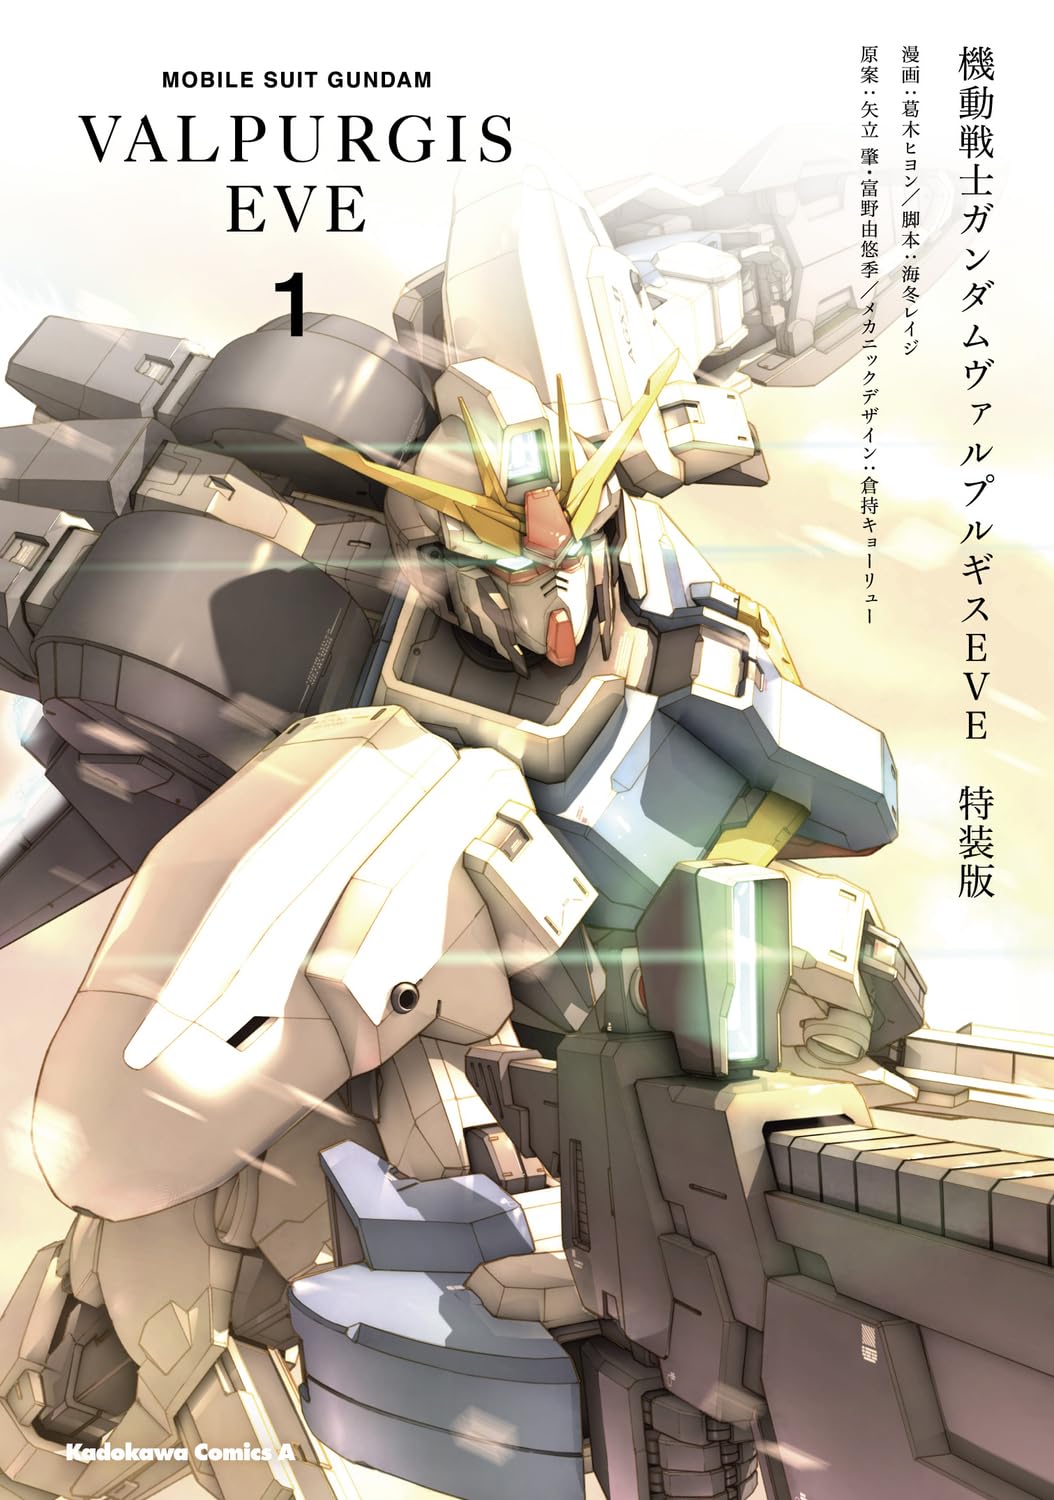 Mobile Suit Gundam VALPURGIS EVE #1  Special Edition /Comic